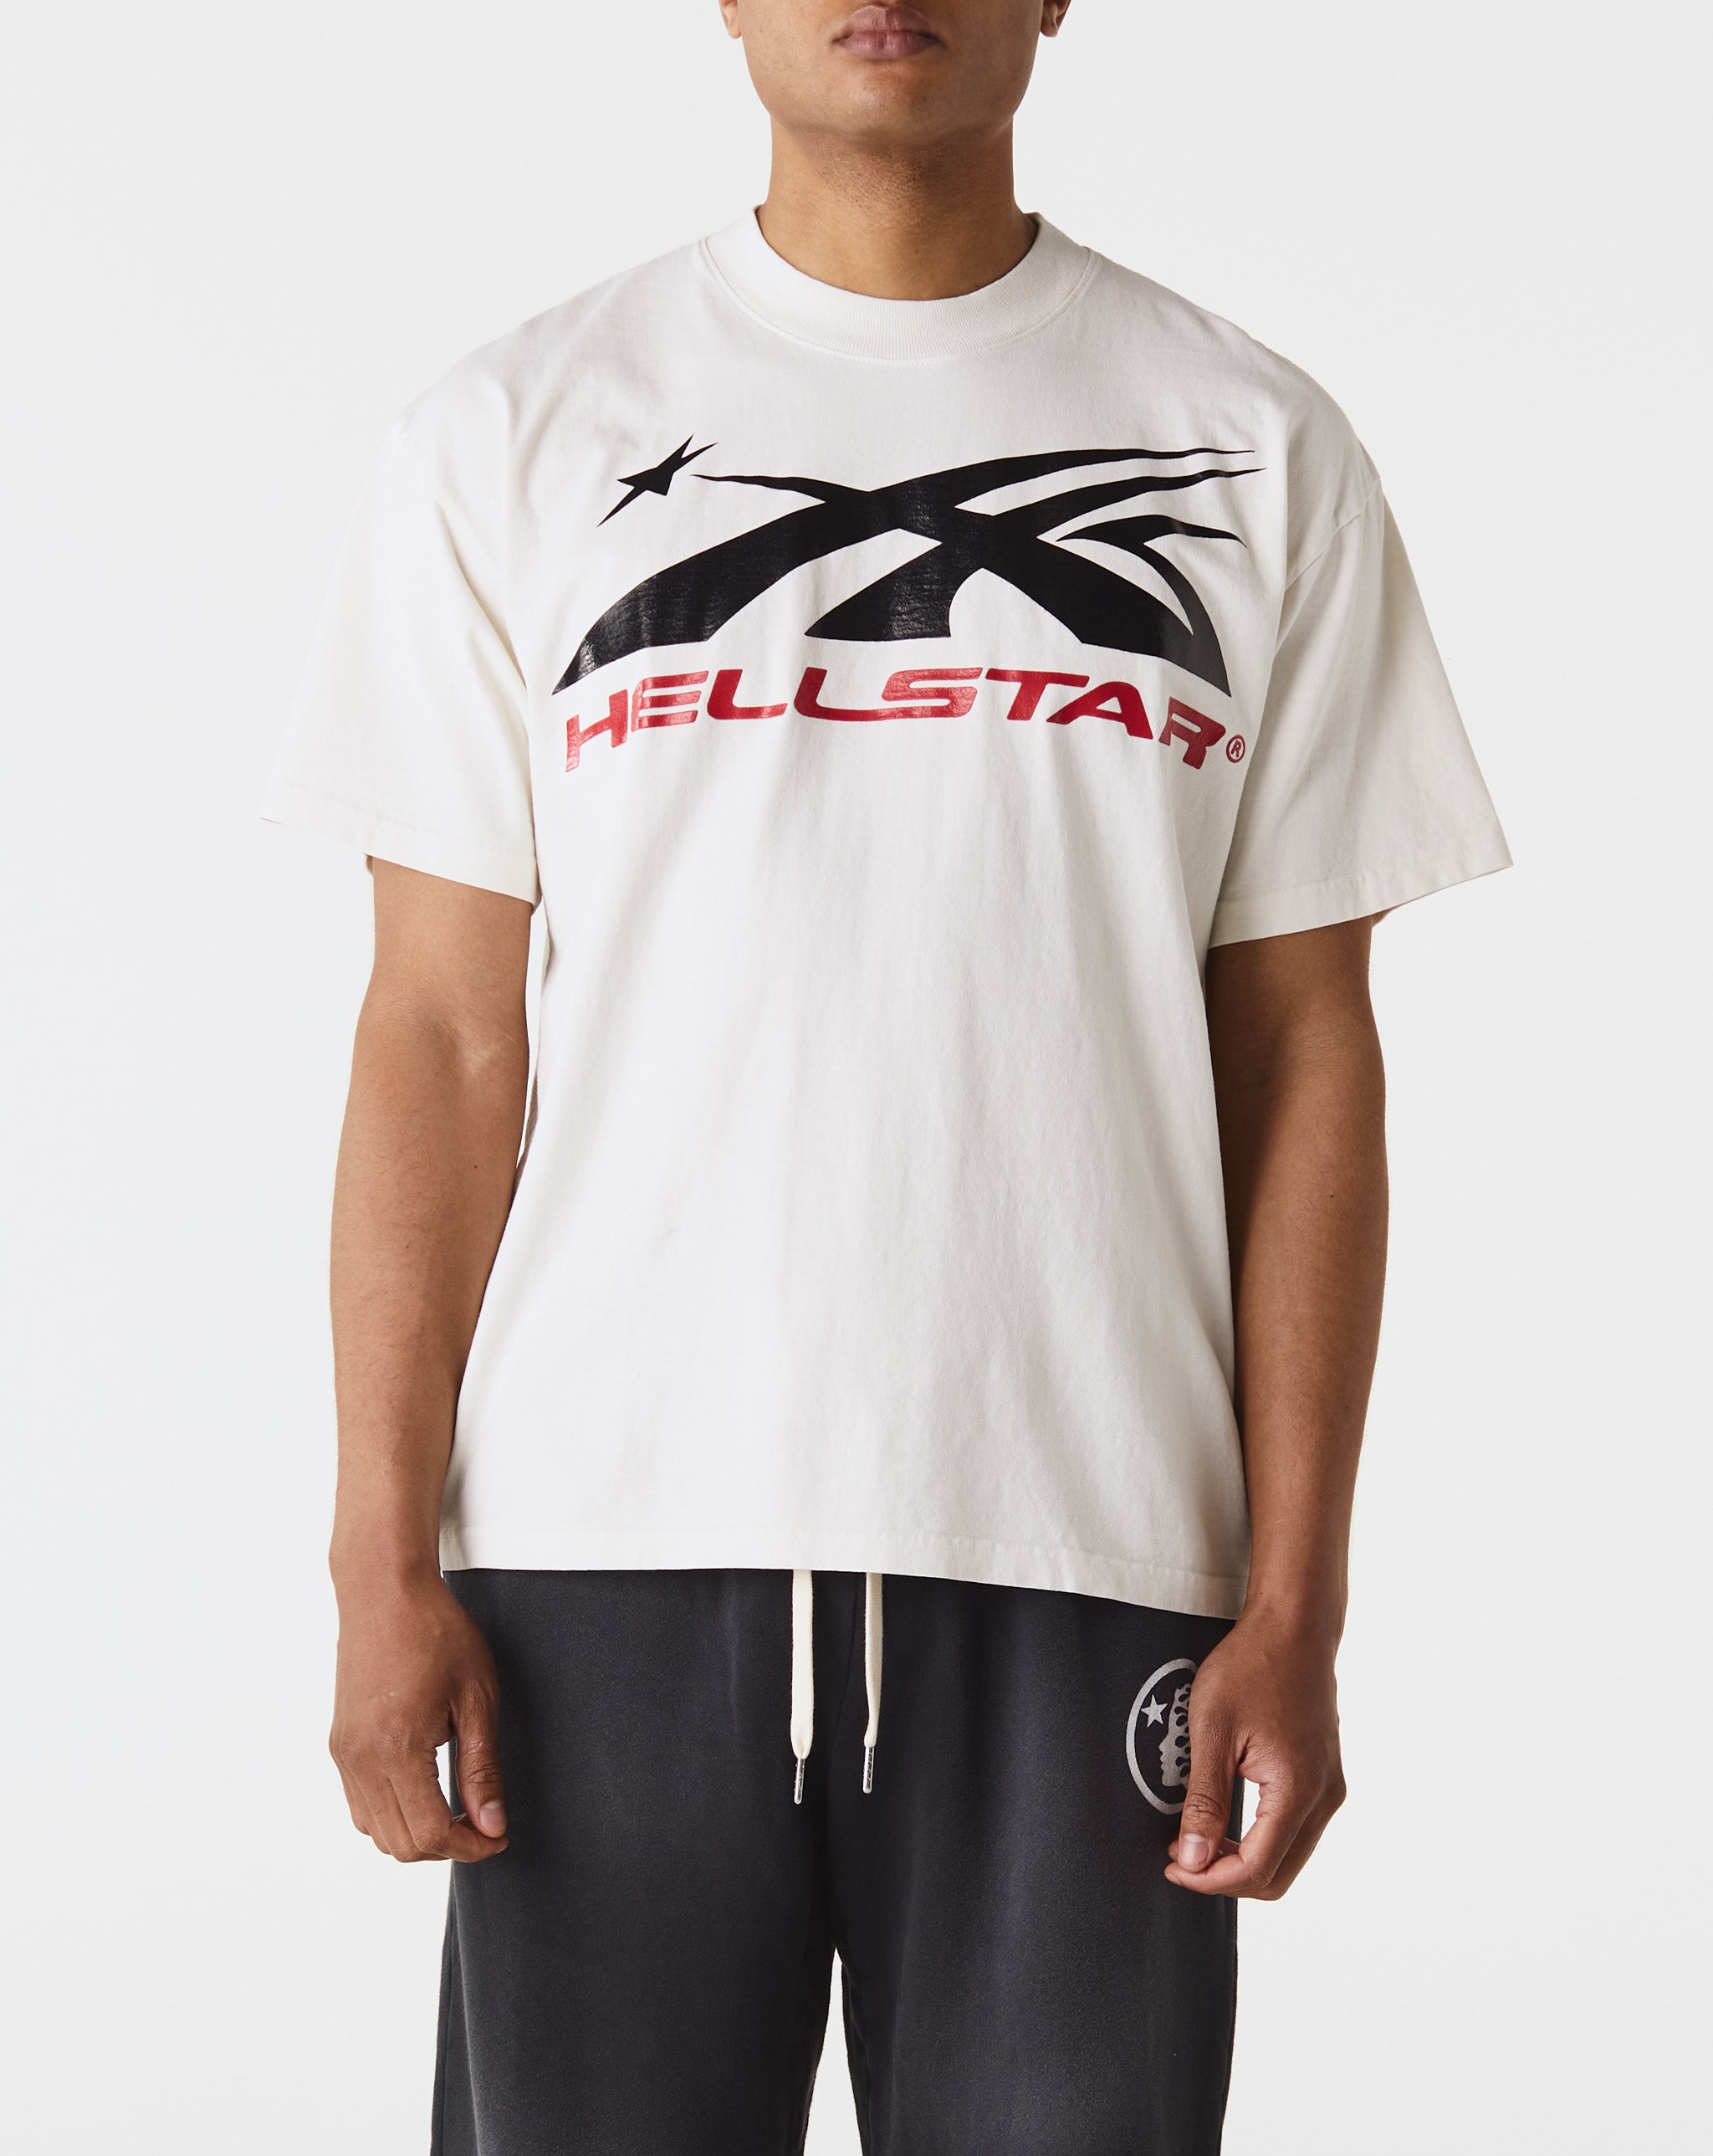 Hellstar A BATHING APE® Baby Milo T-shirt  - Cheap 127-0 Jordan outlet